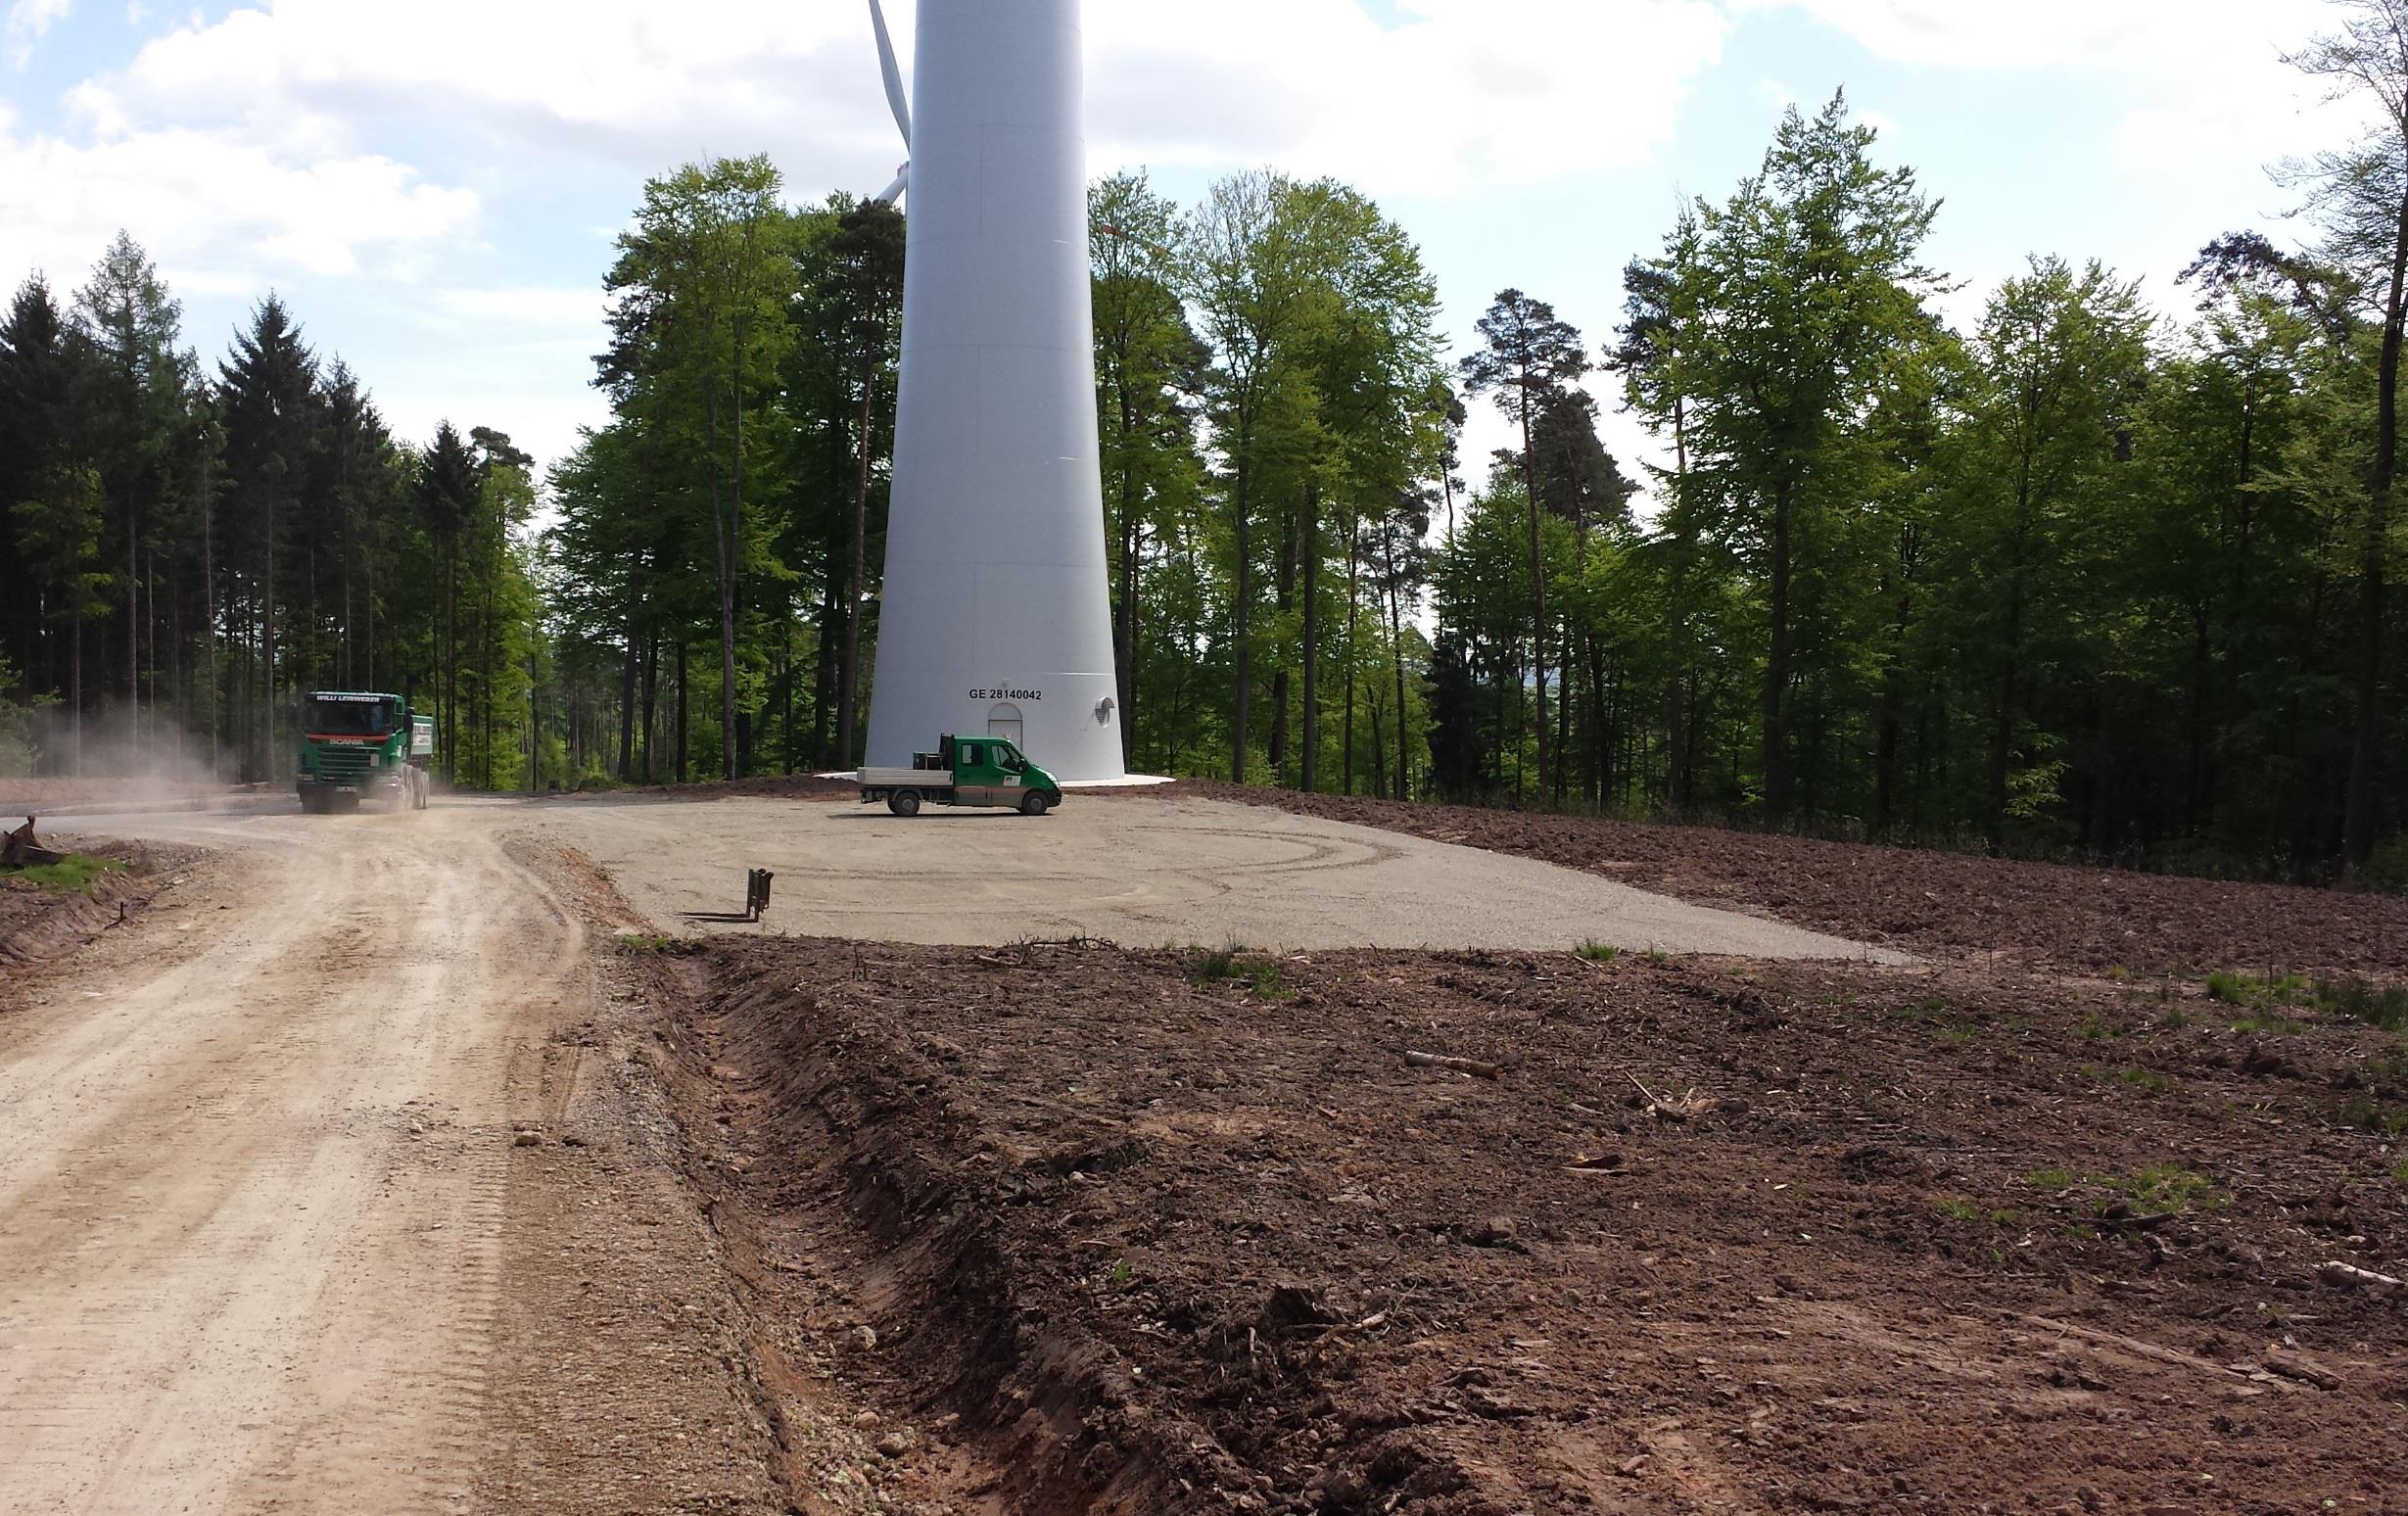 Bau eines Windparks im Wald Dauerhafter